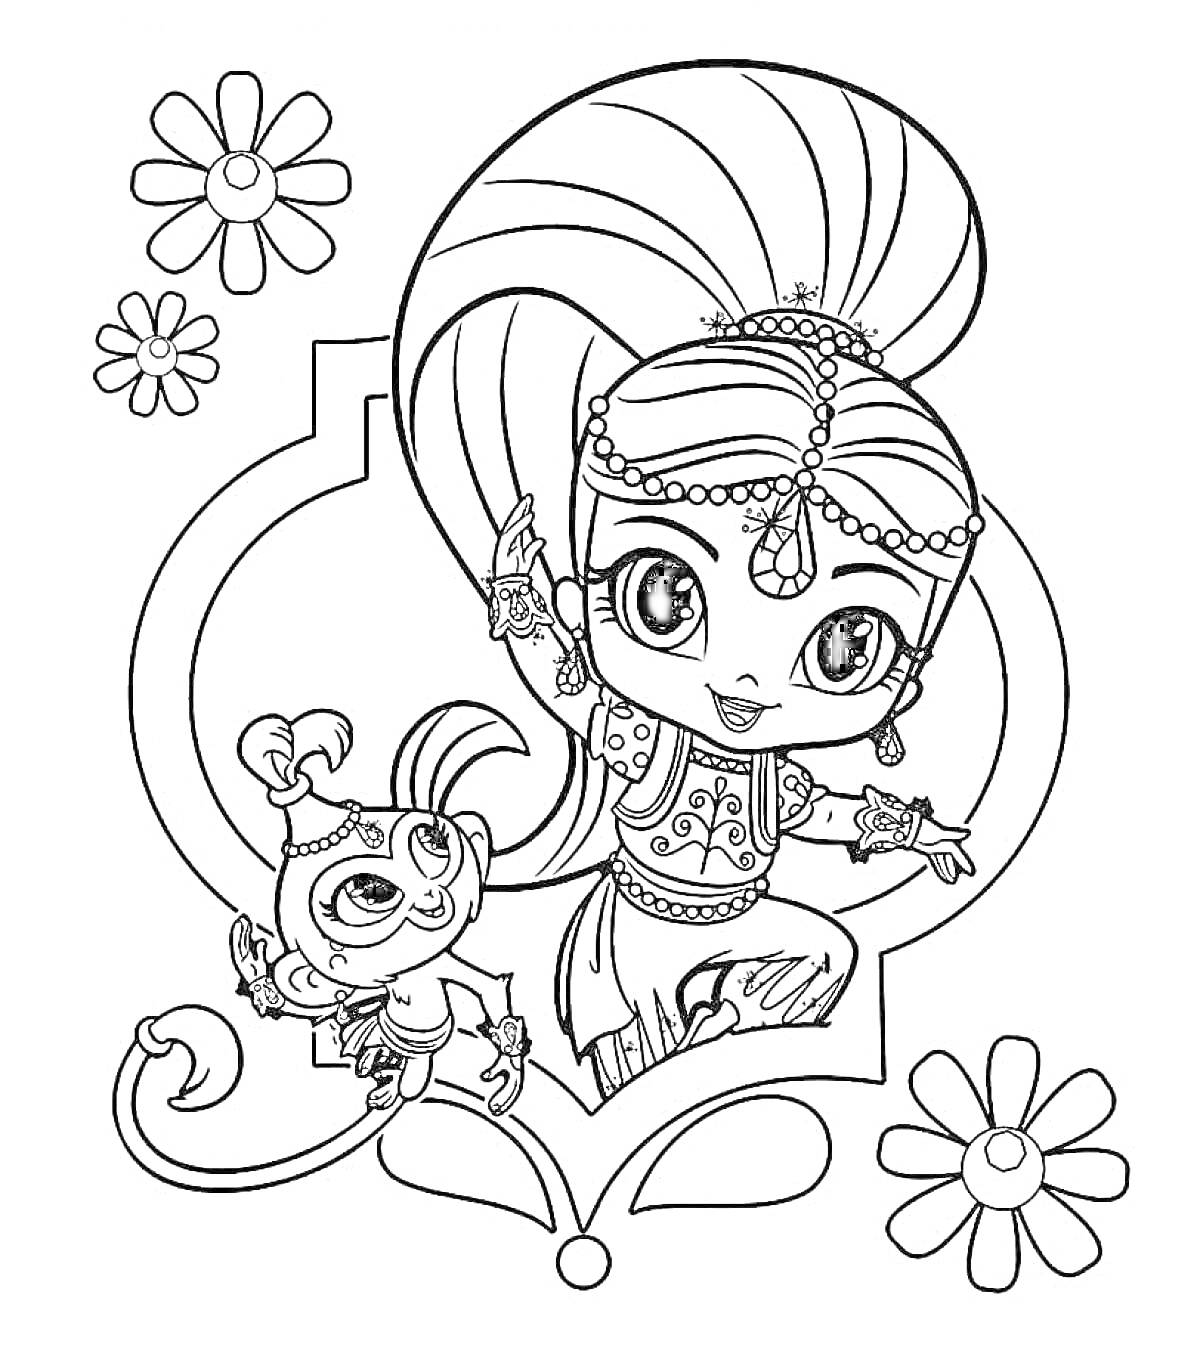 Раскраска Девочка-джин и обезьяна с большим хвостом, окружённые цветами